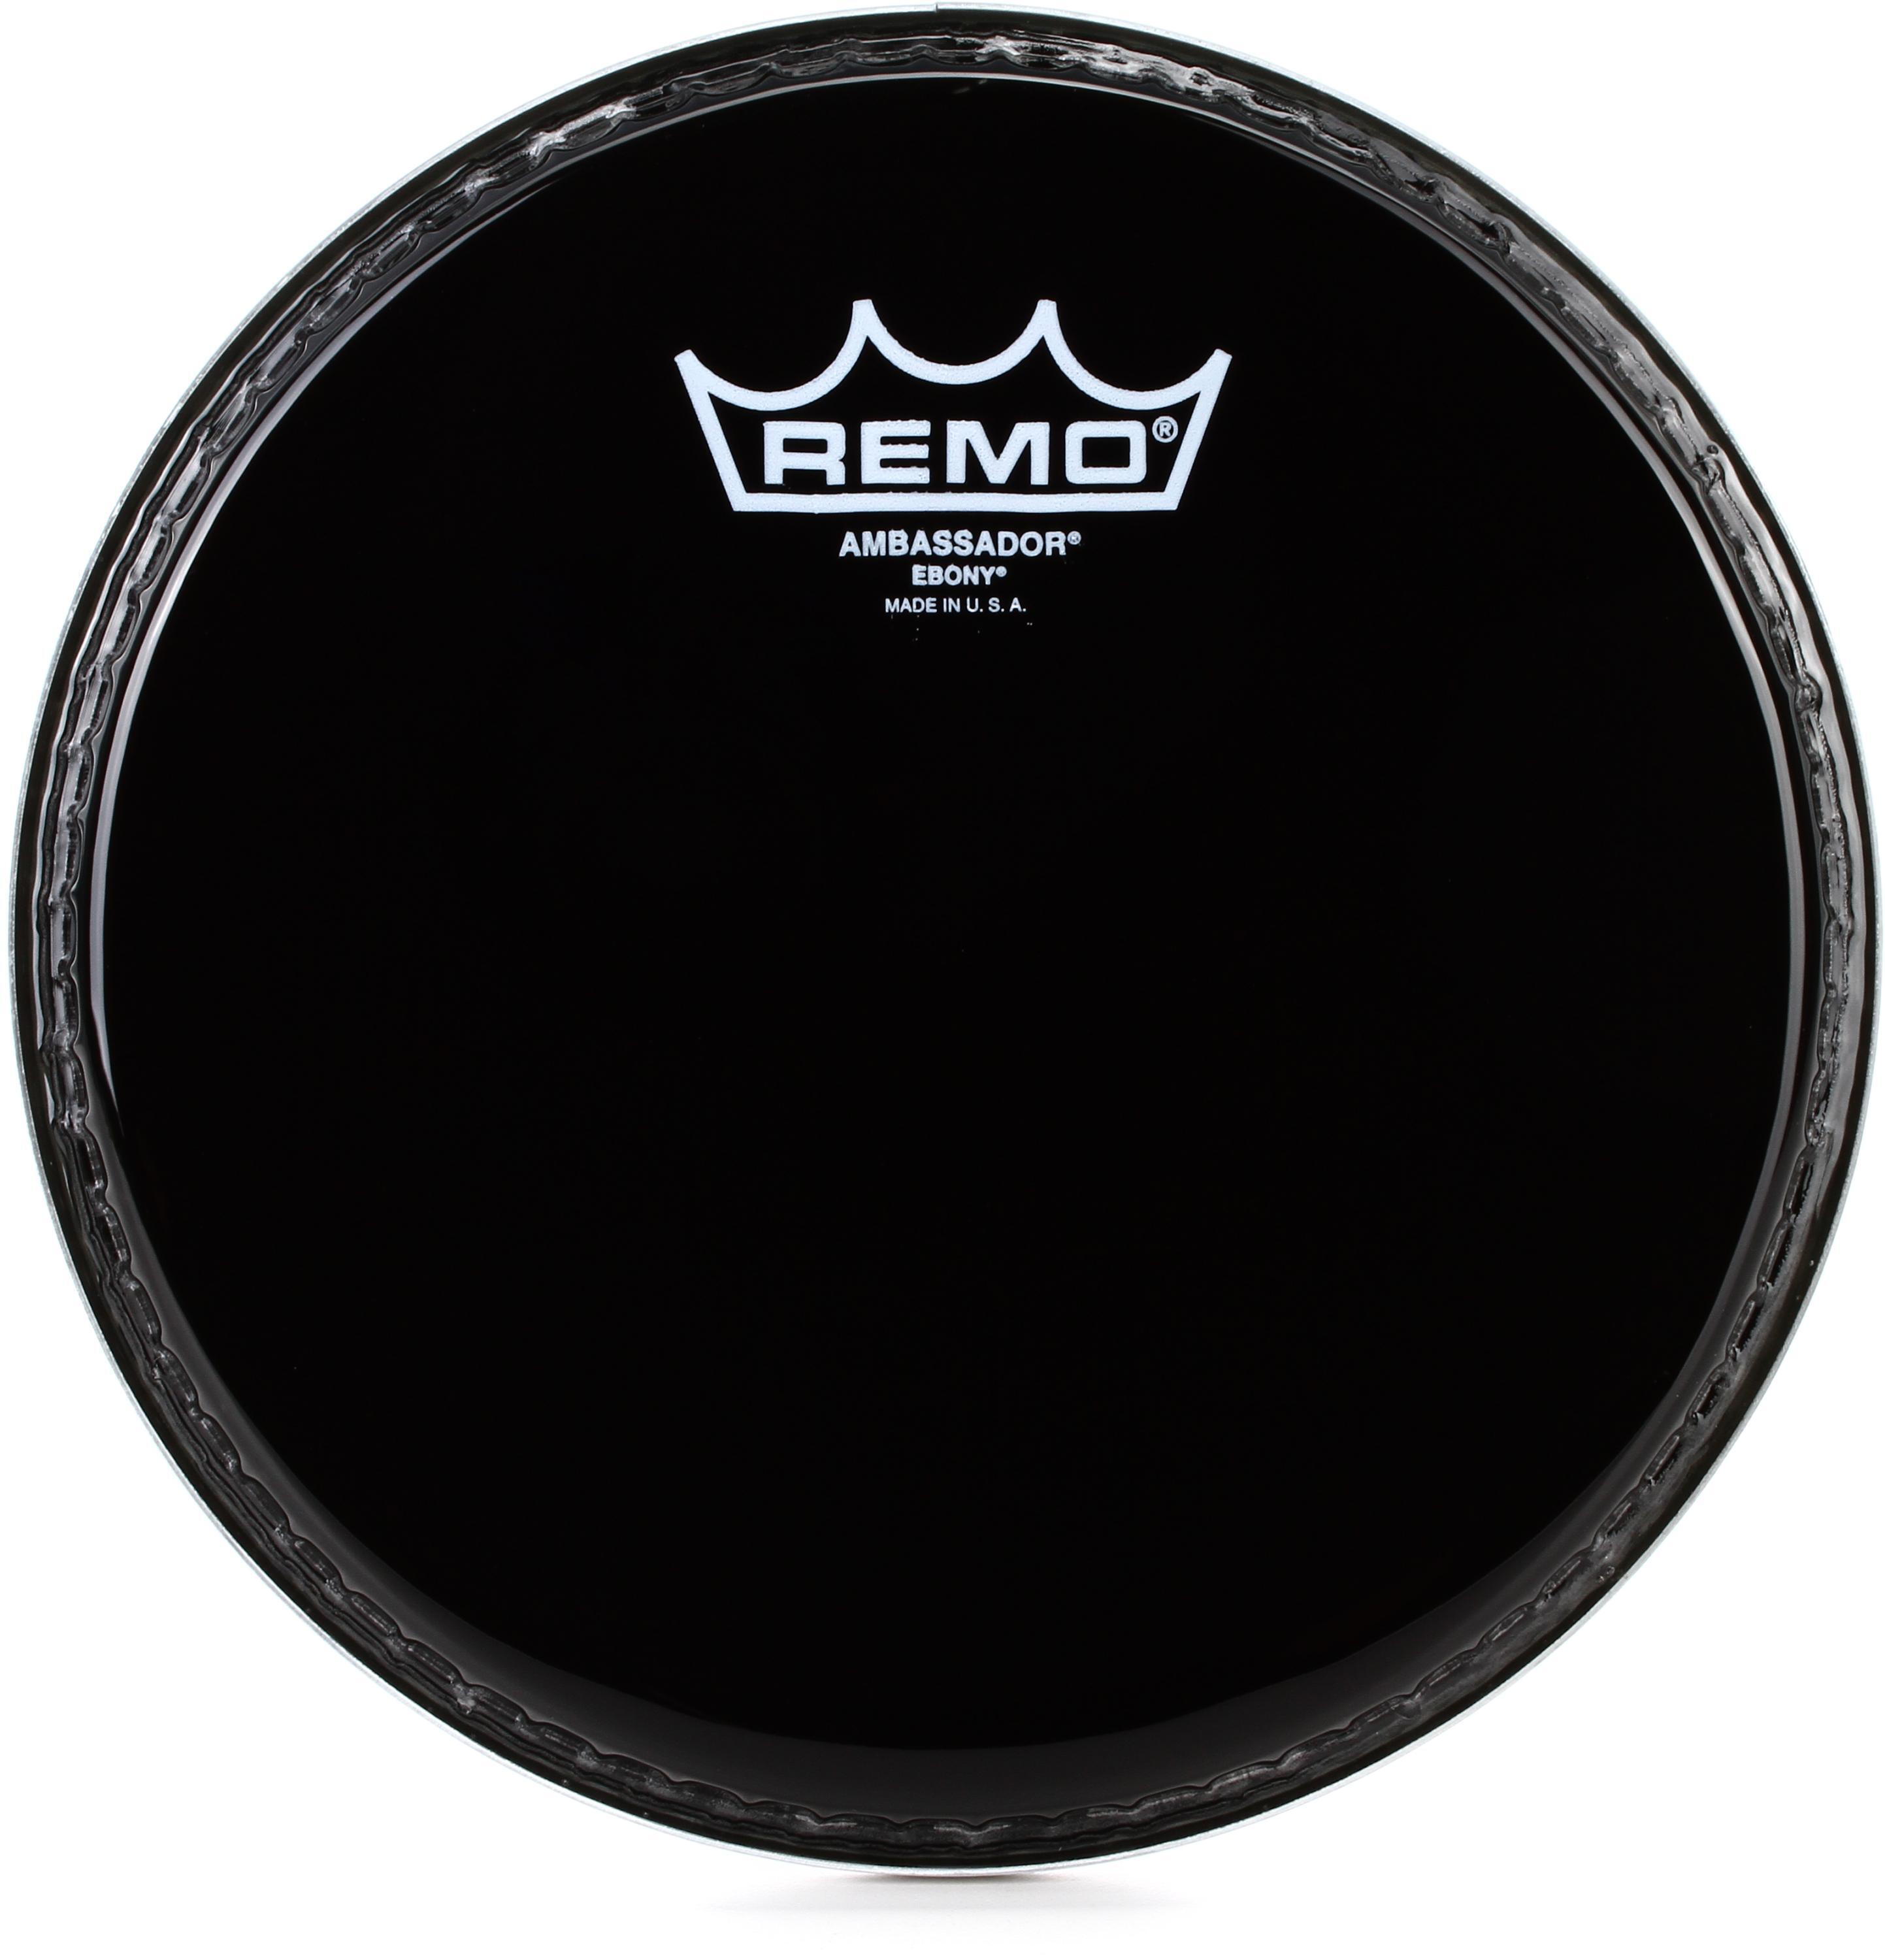 Bundled Item: Remo Ambassador Ebony Drumhead - 8 inch